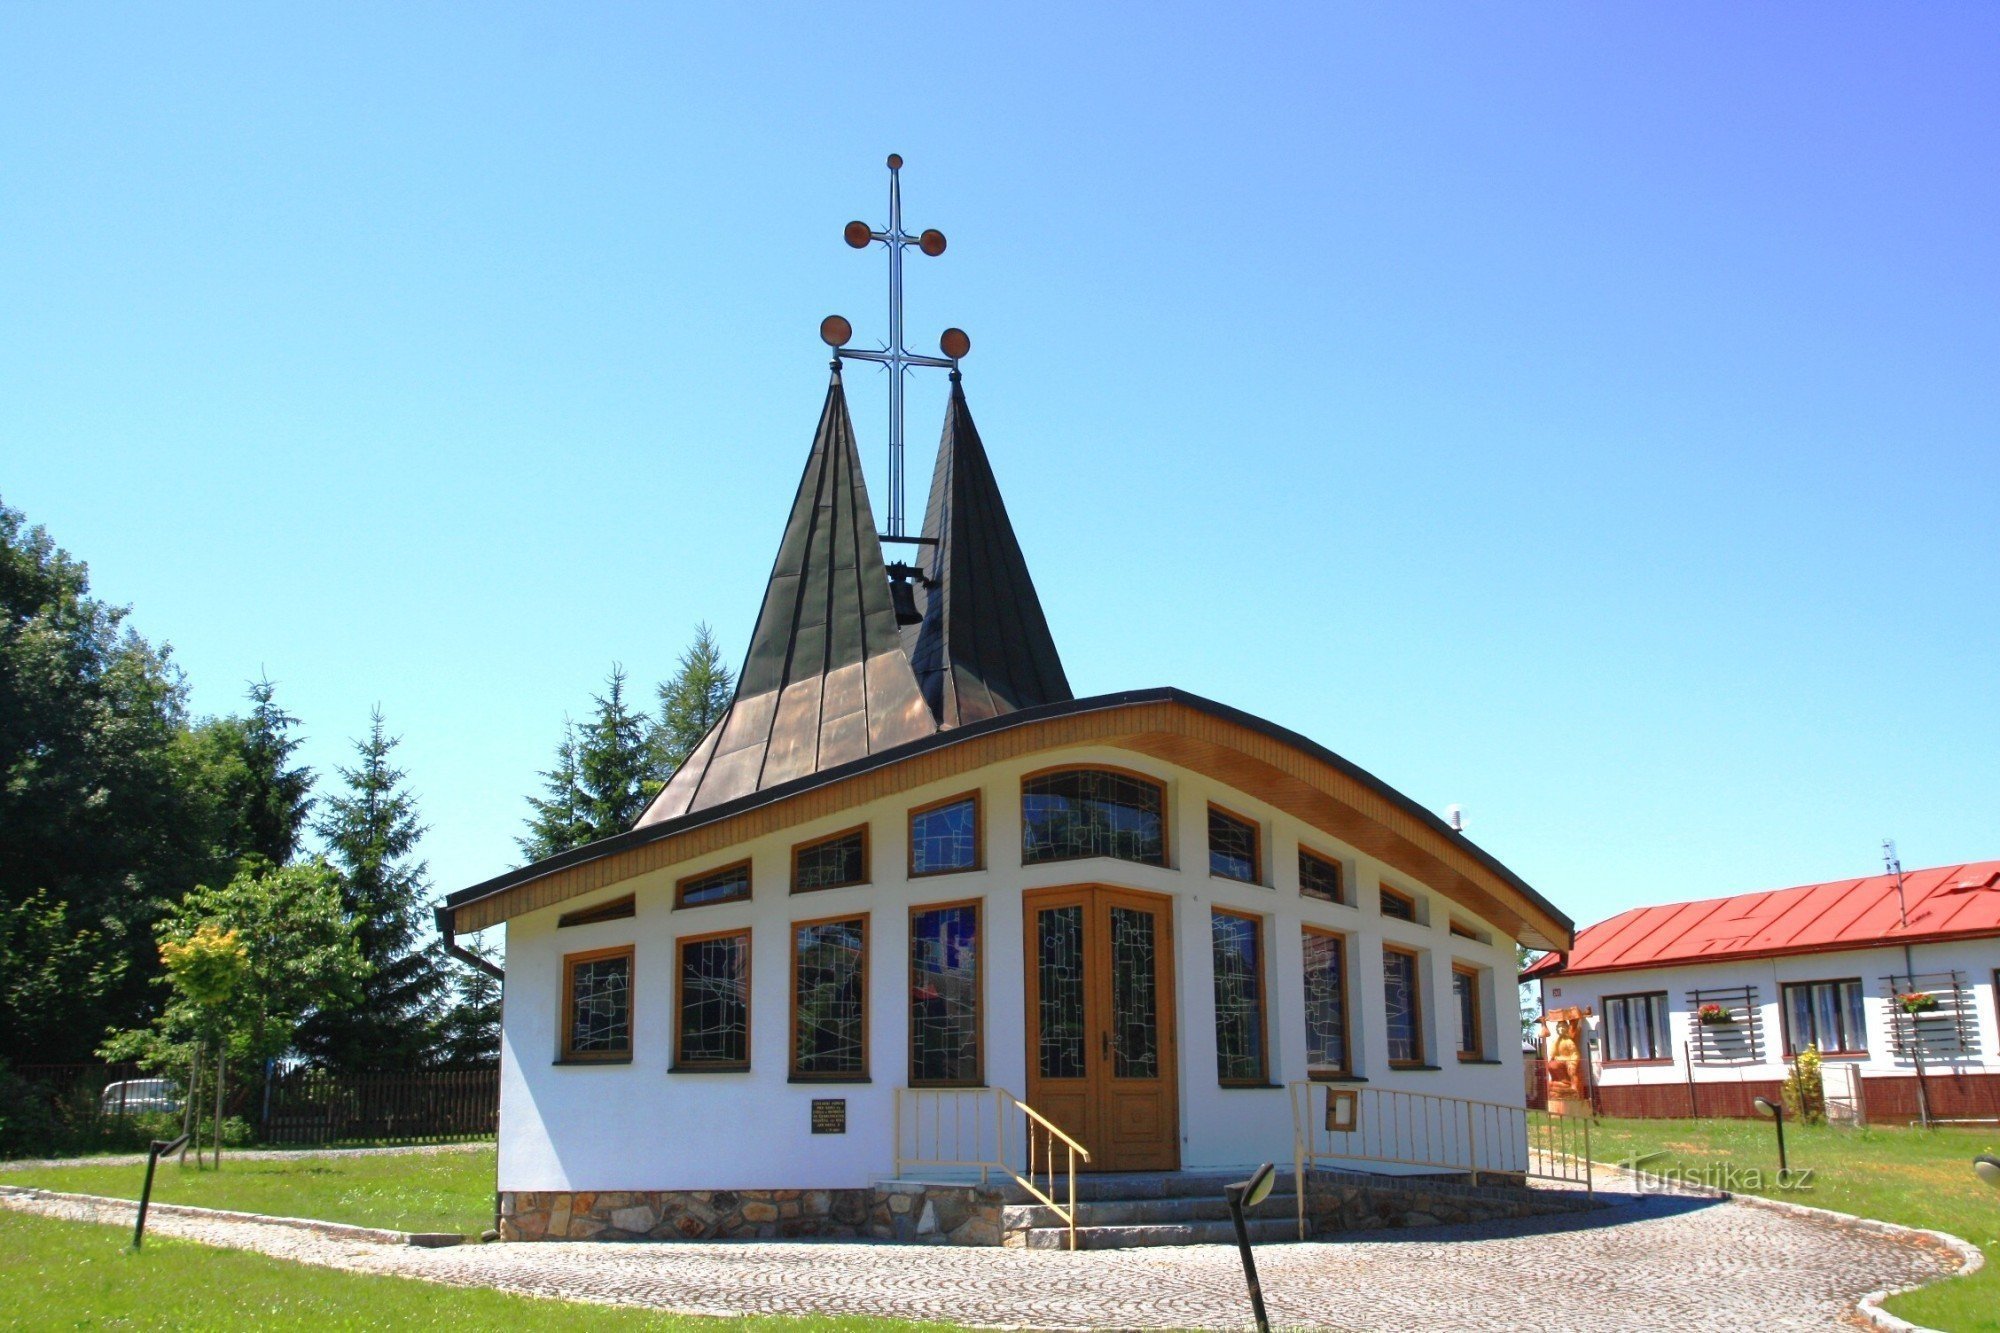 Škrdlovice - kapellet St. Cyril och Methodius